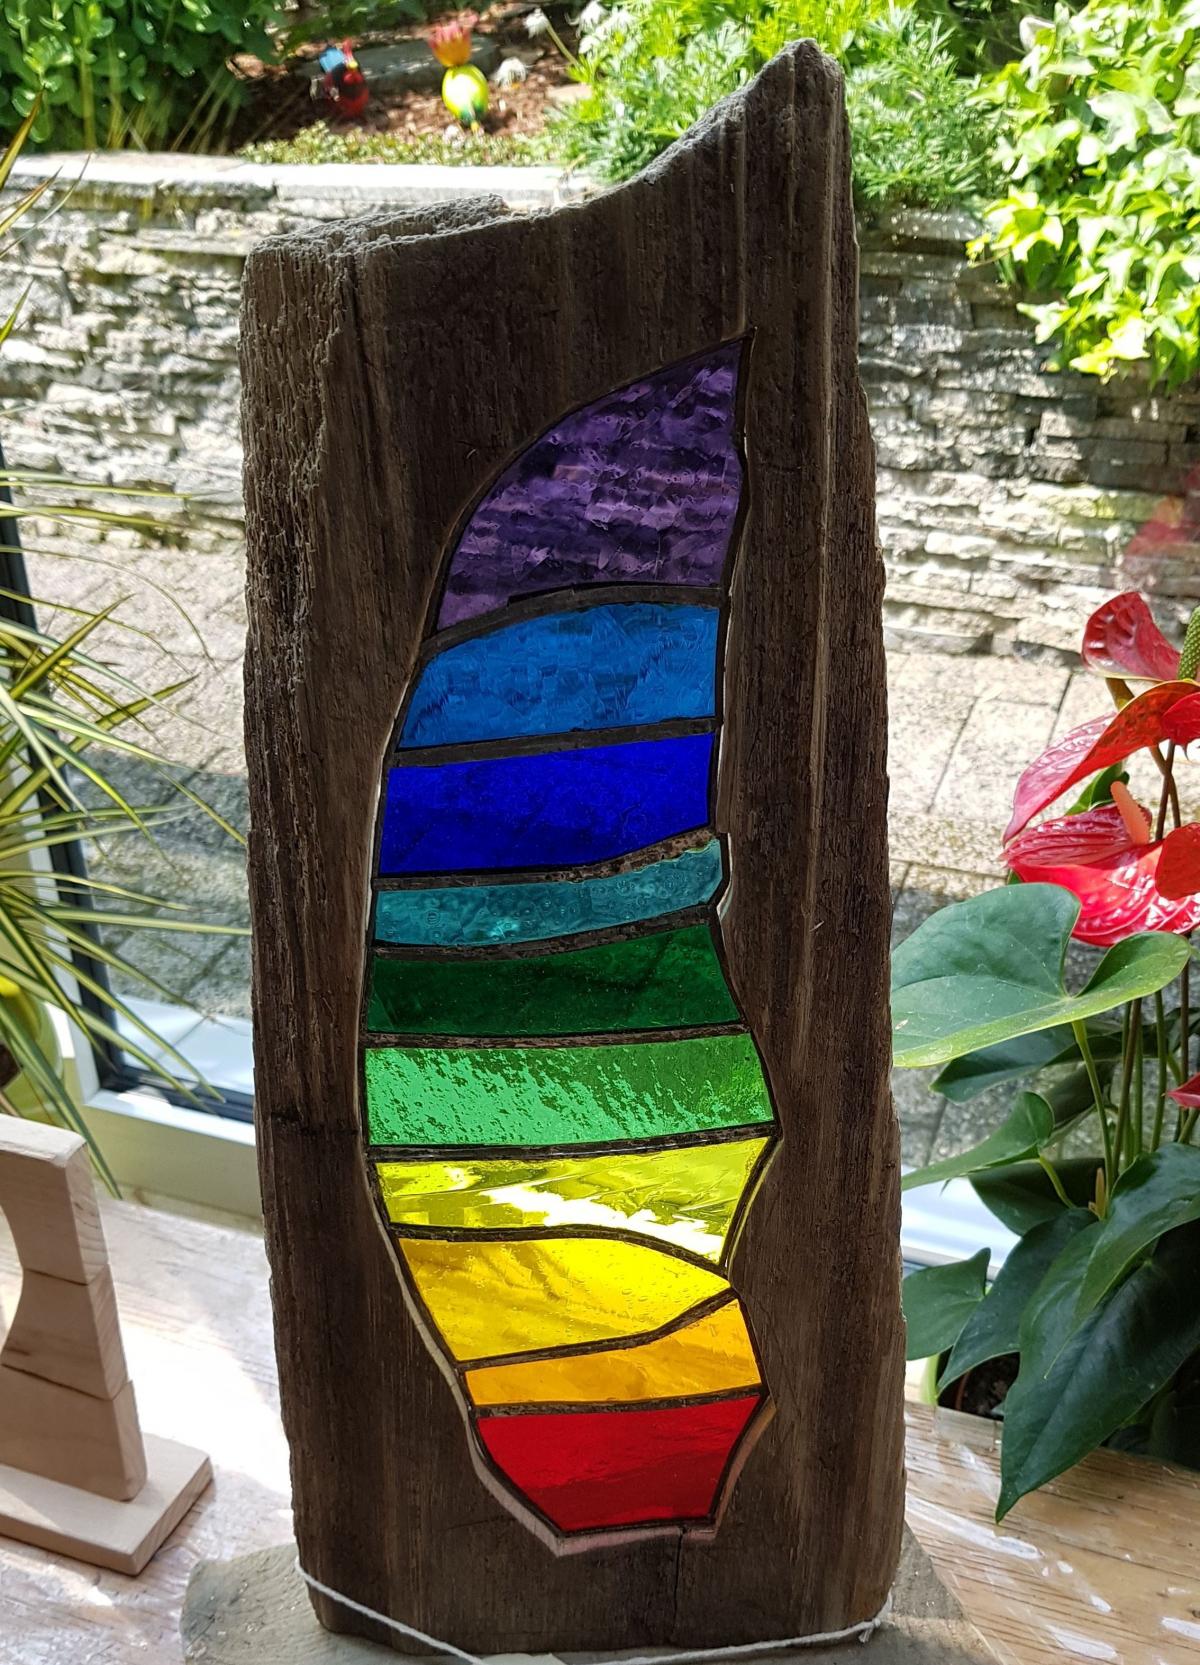 Holzstele mit Glas in Regenbogenfarben, gefertigt von Ludger Halbe. von privat